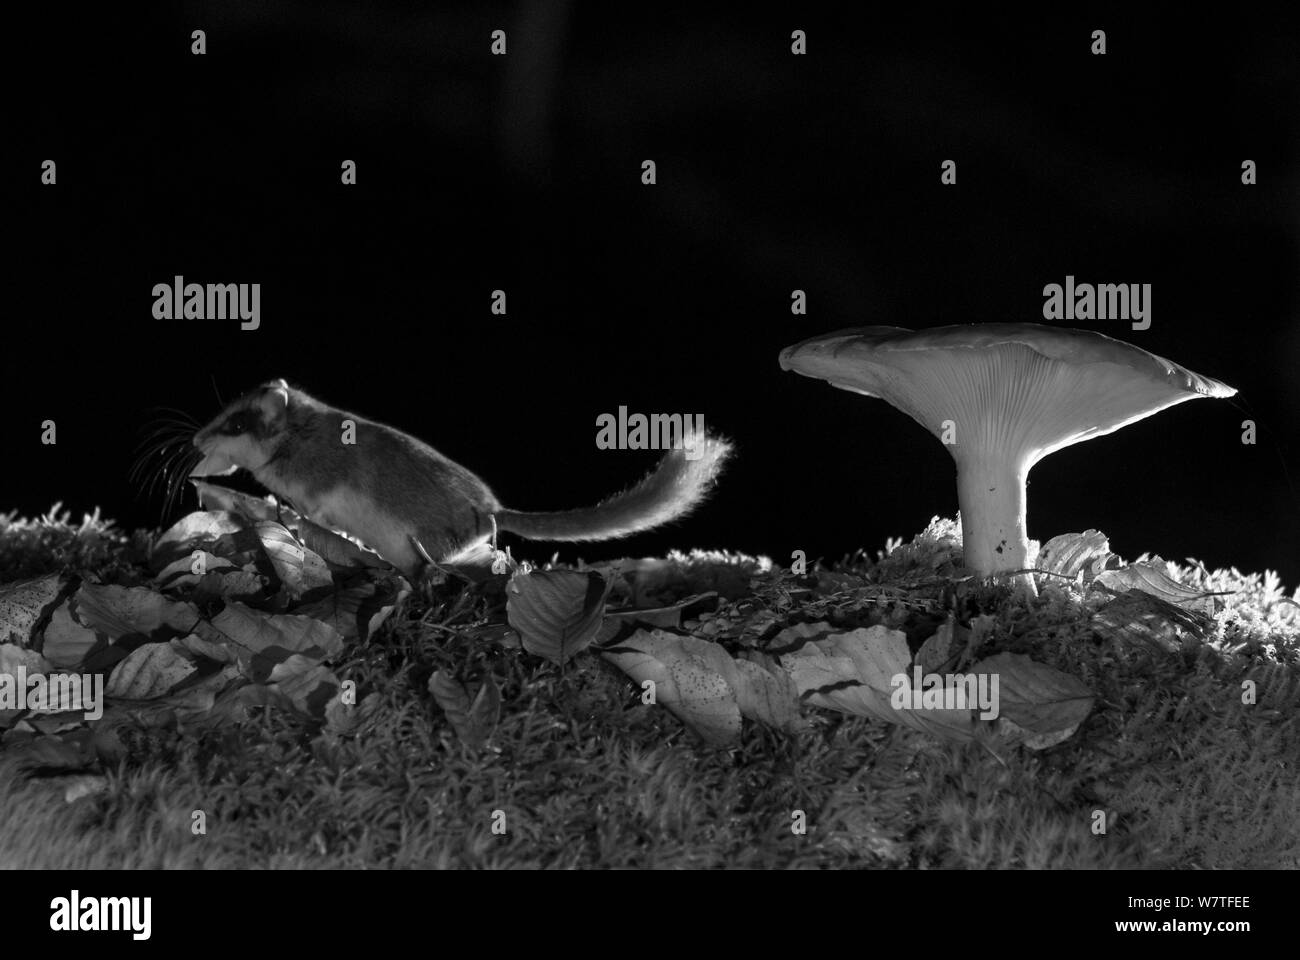 Wald Siebenschläfer (Dryomys nitedula) mit Köder (ein Stück Birne), Wandern von Pilz in der Nacht, mit Infrarot Fernbedienung Kamera trap, Slowenien, Oktober getroffen. Stockfoto